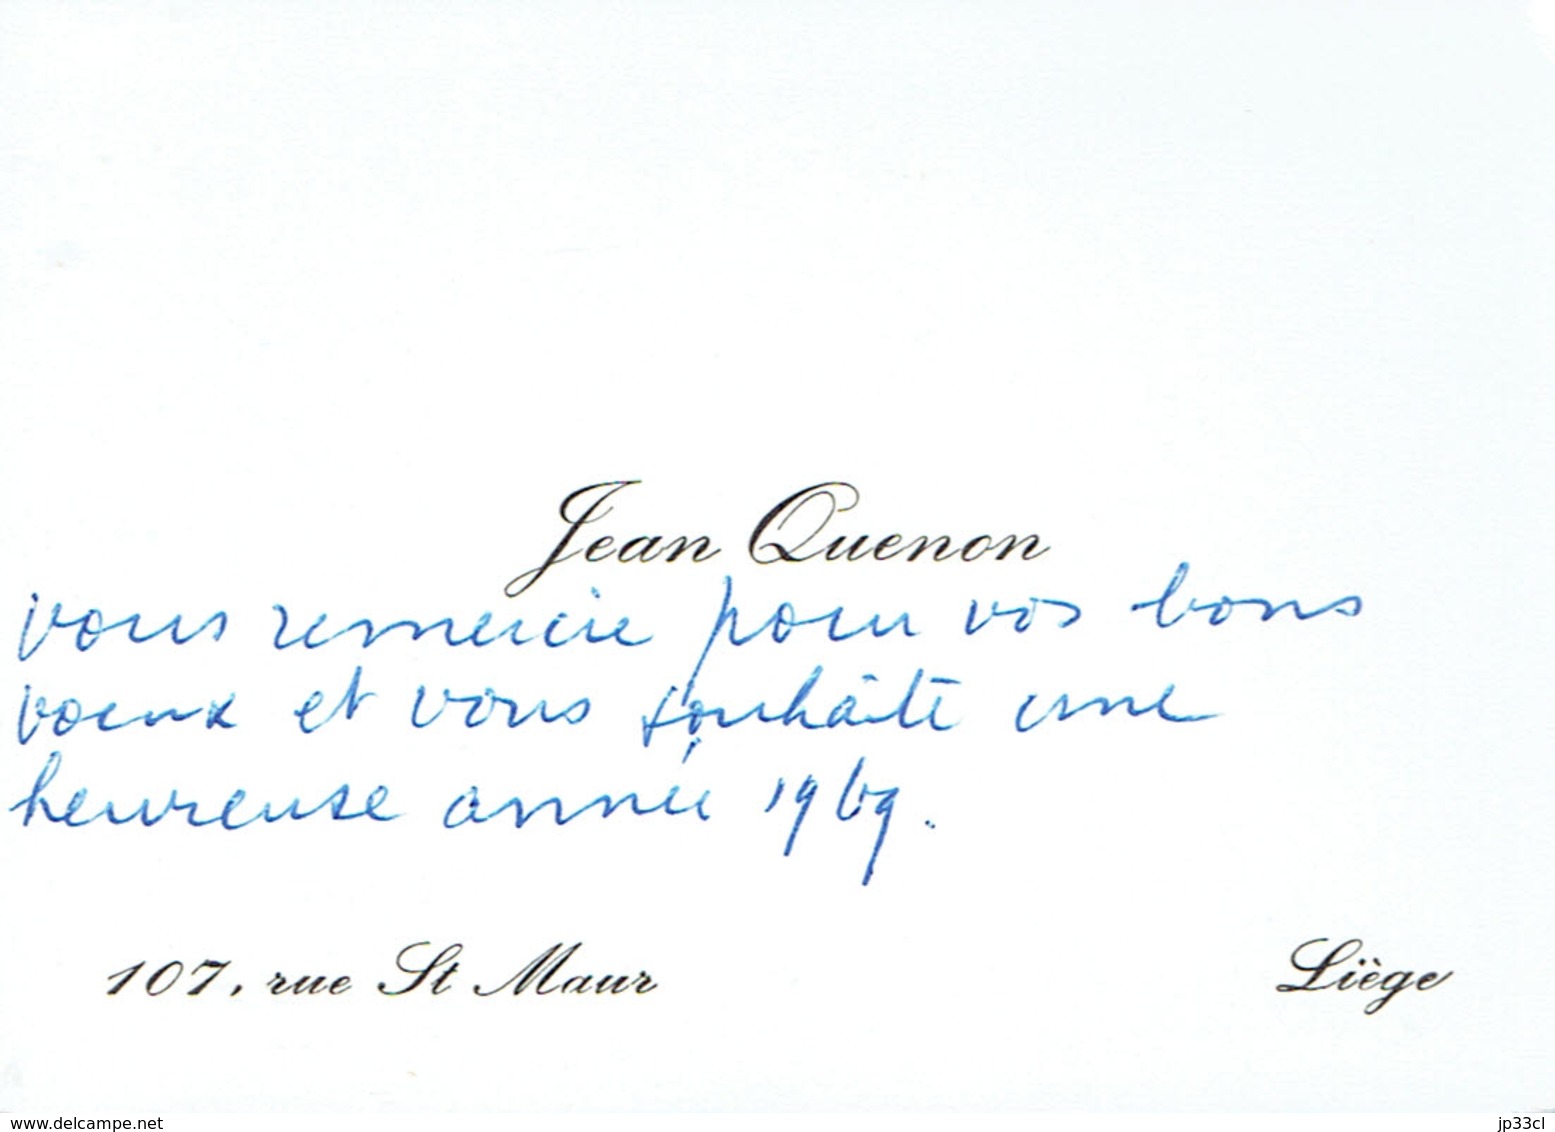 Ancienne Carte De Visite Autographe De Jean Quenon, Professeur à L'ULG, Rue St Maur, Liège (vers 1968) - Visitenkarten